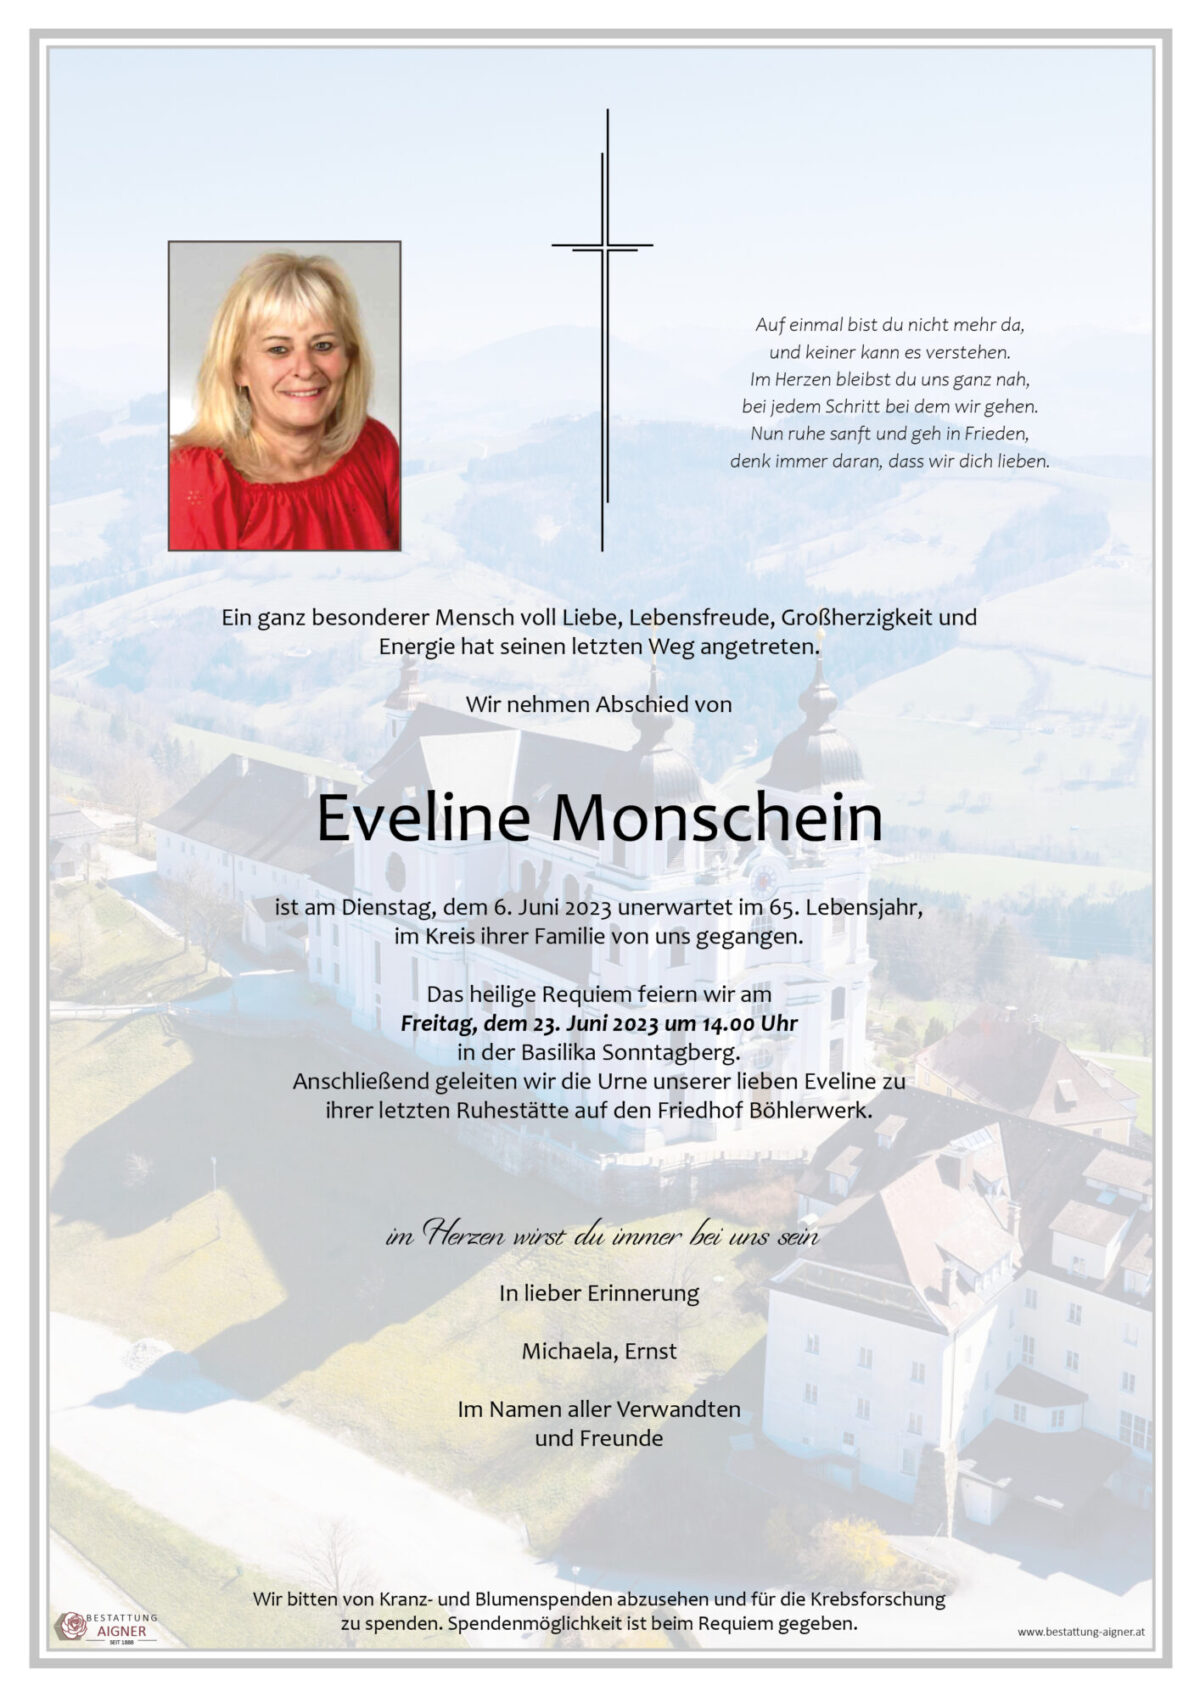 Eveline Monschein